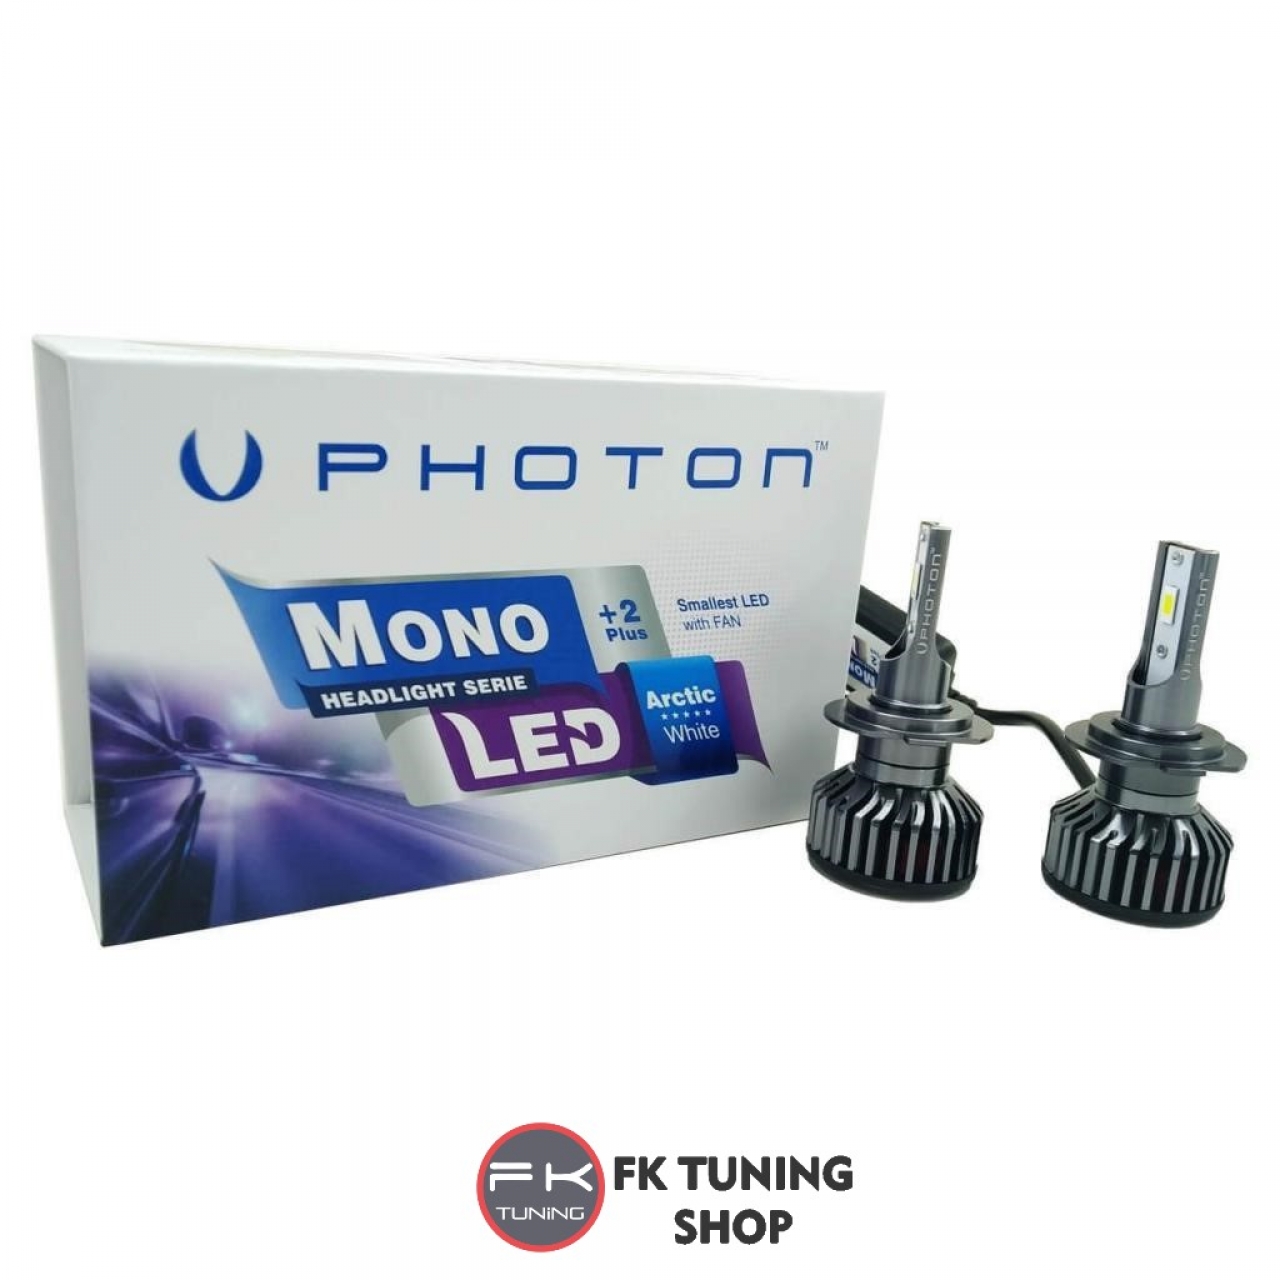 PHOTON 9005 LED XENON MONO SERİSİ +2 Plus Serisi 